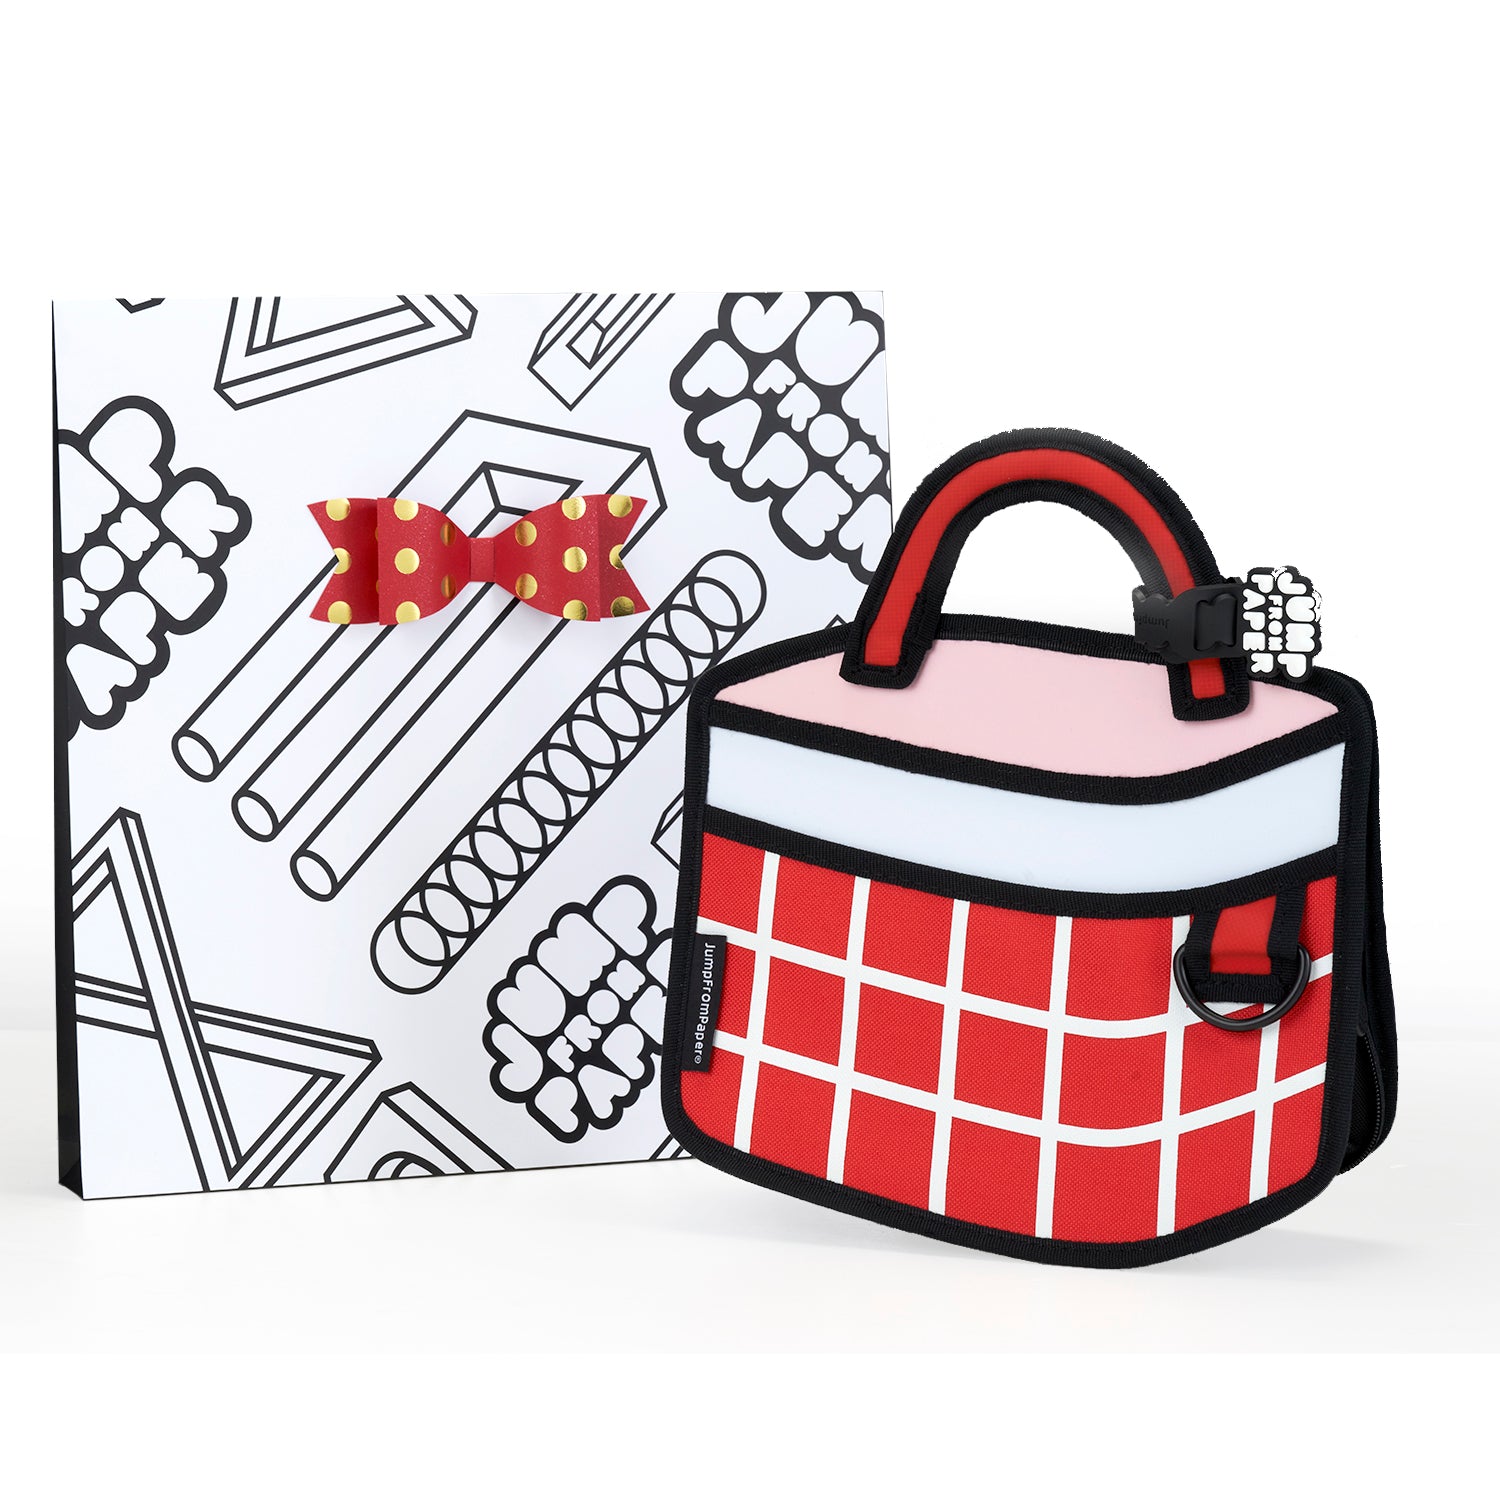 Gift Wrap for Pink Cake bag / Metal Chain Bag